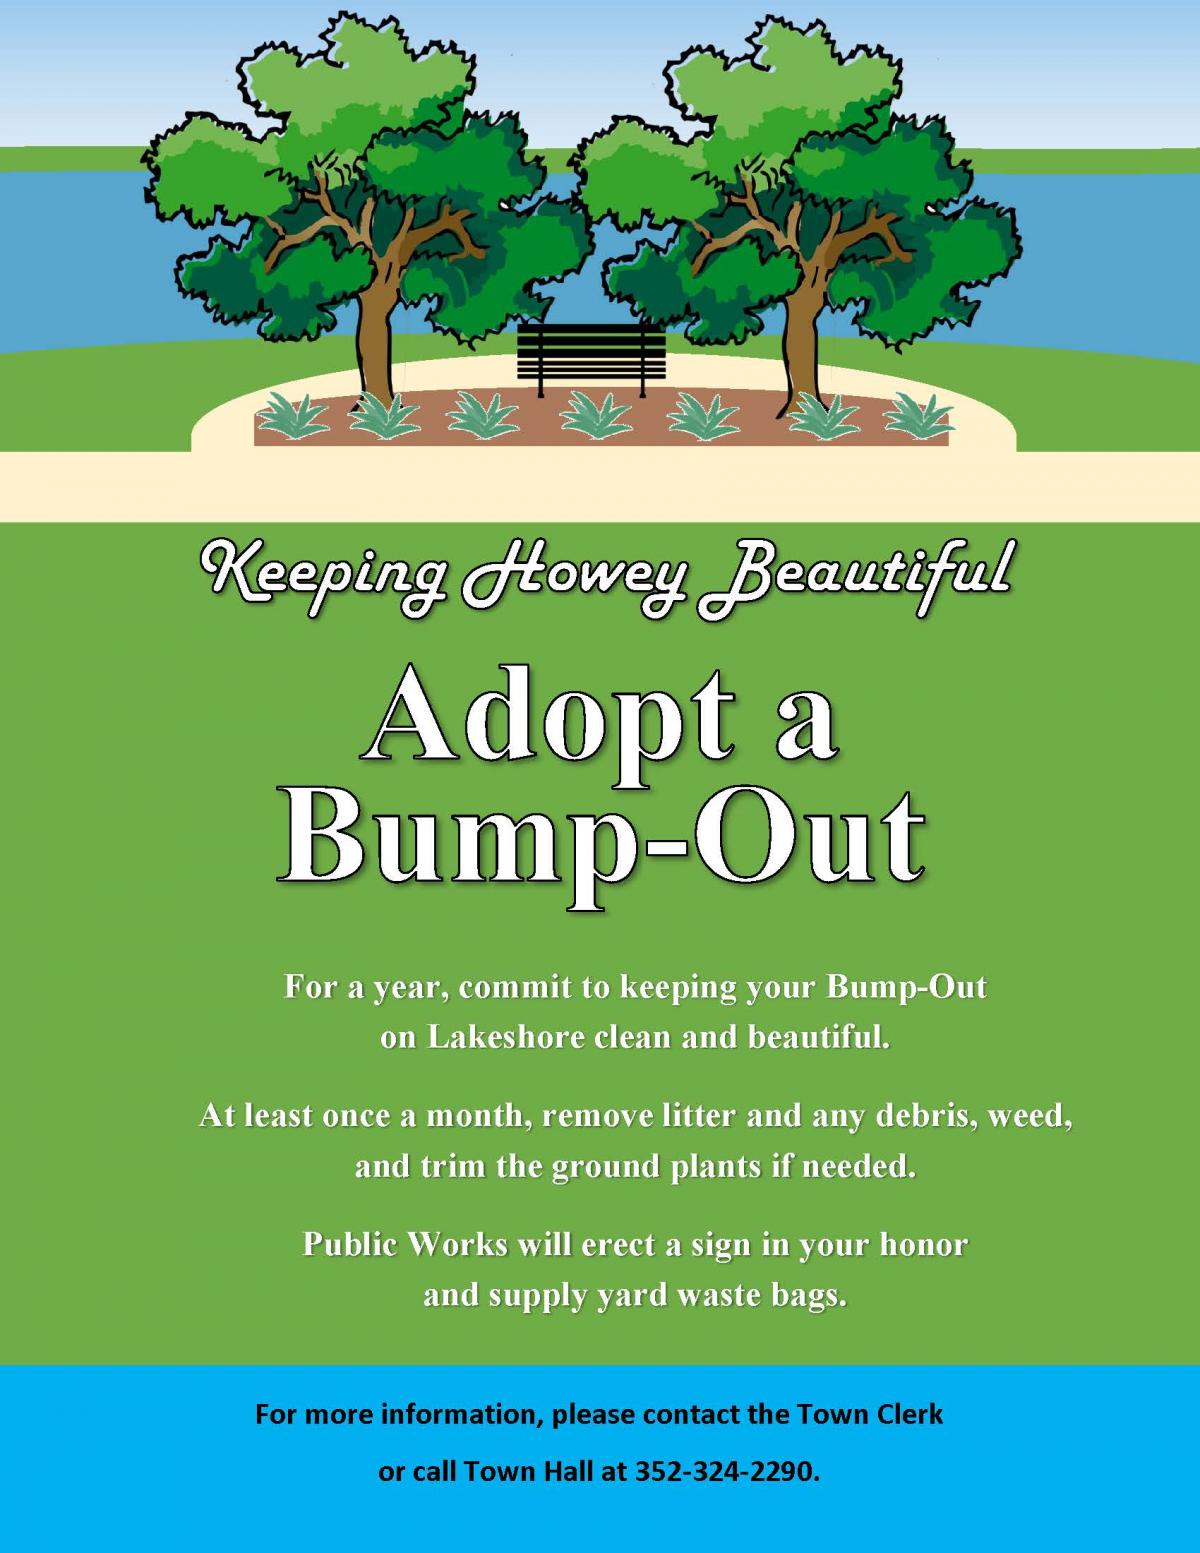 Adopt A Bump Out Image explaining Program